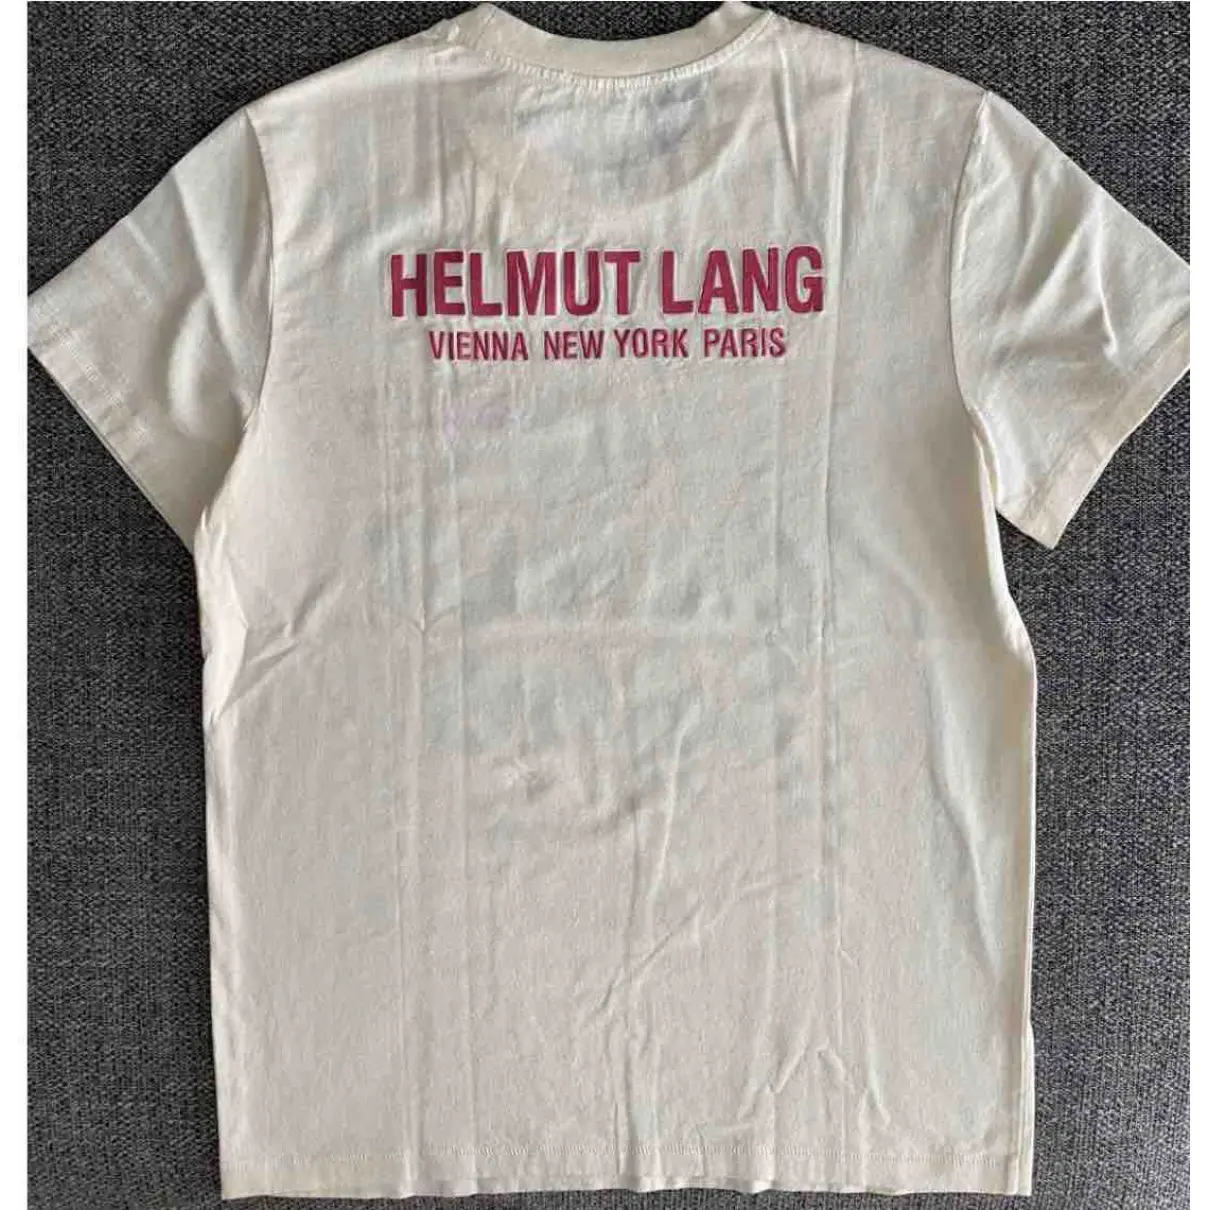 Buy Helmut Lang Beige Cotton Top online